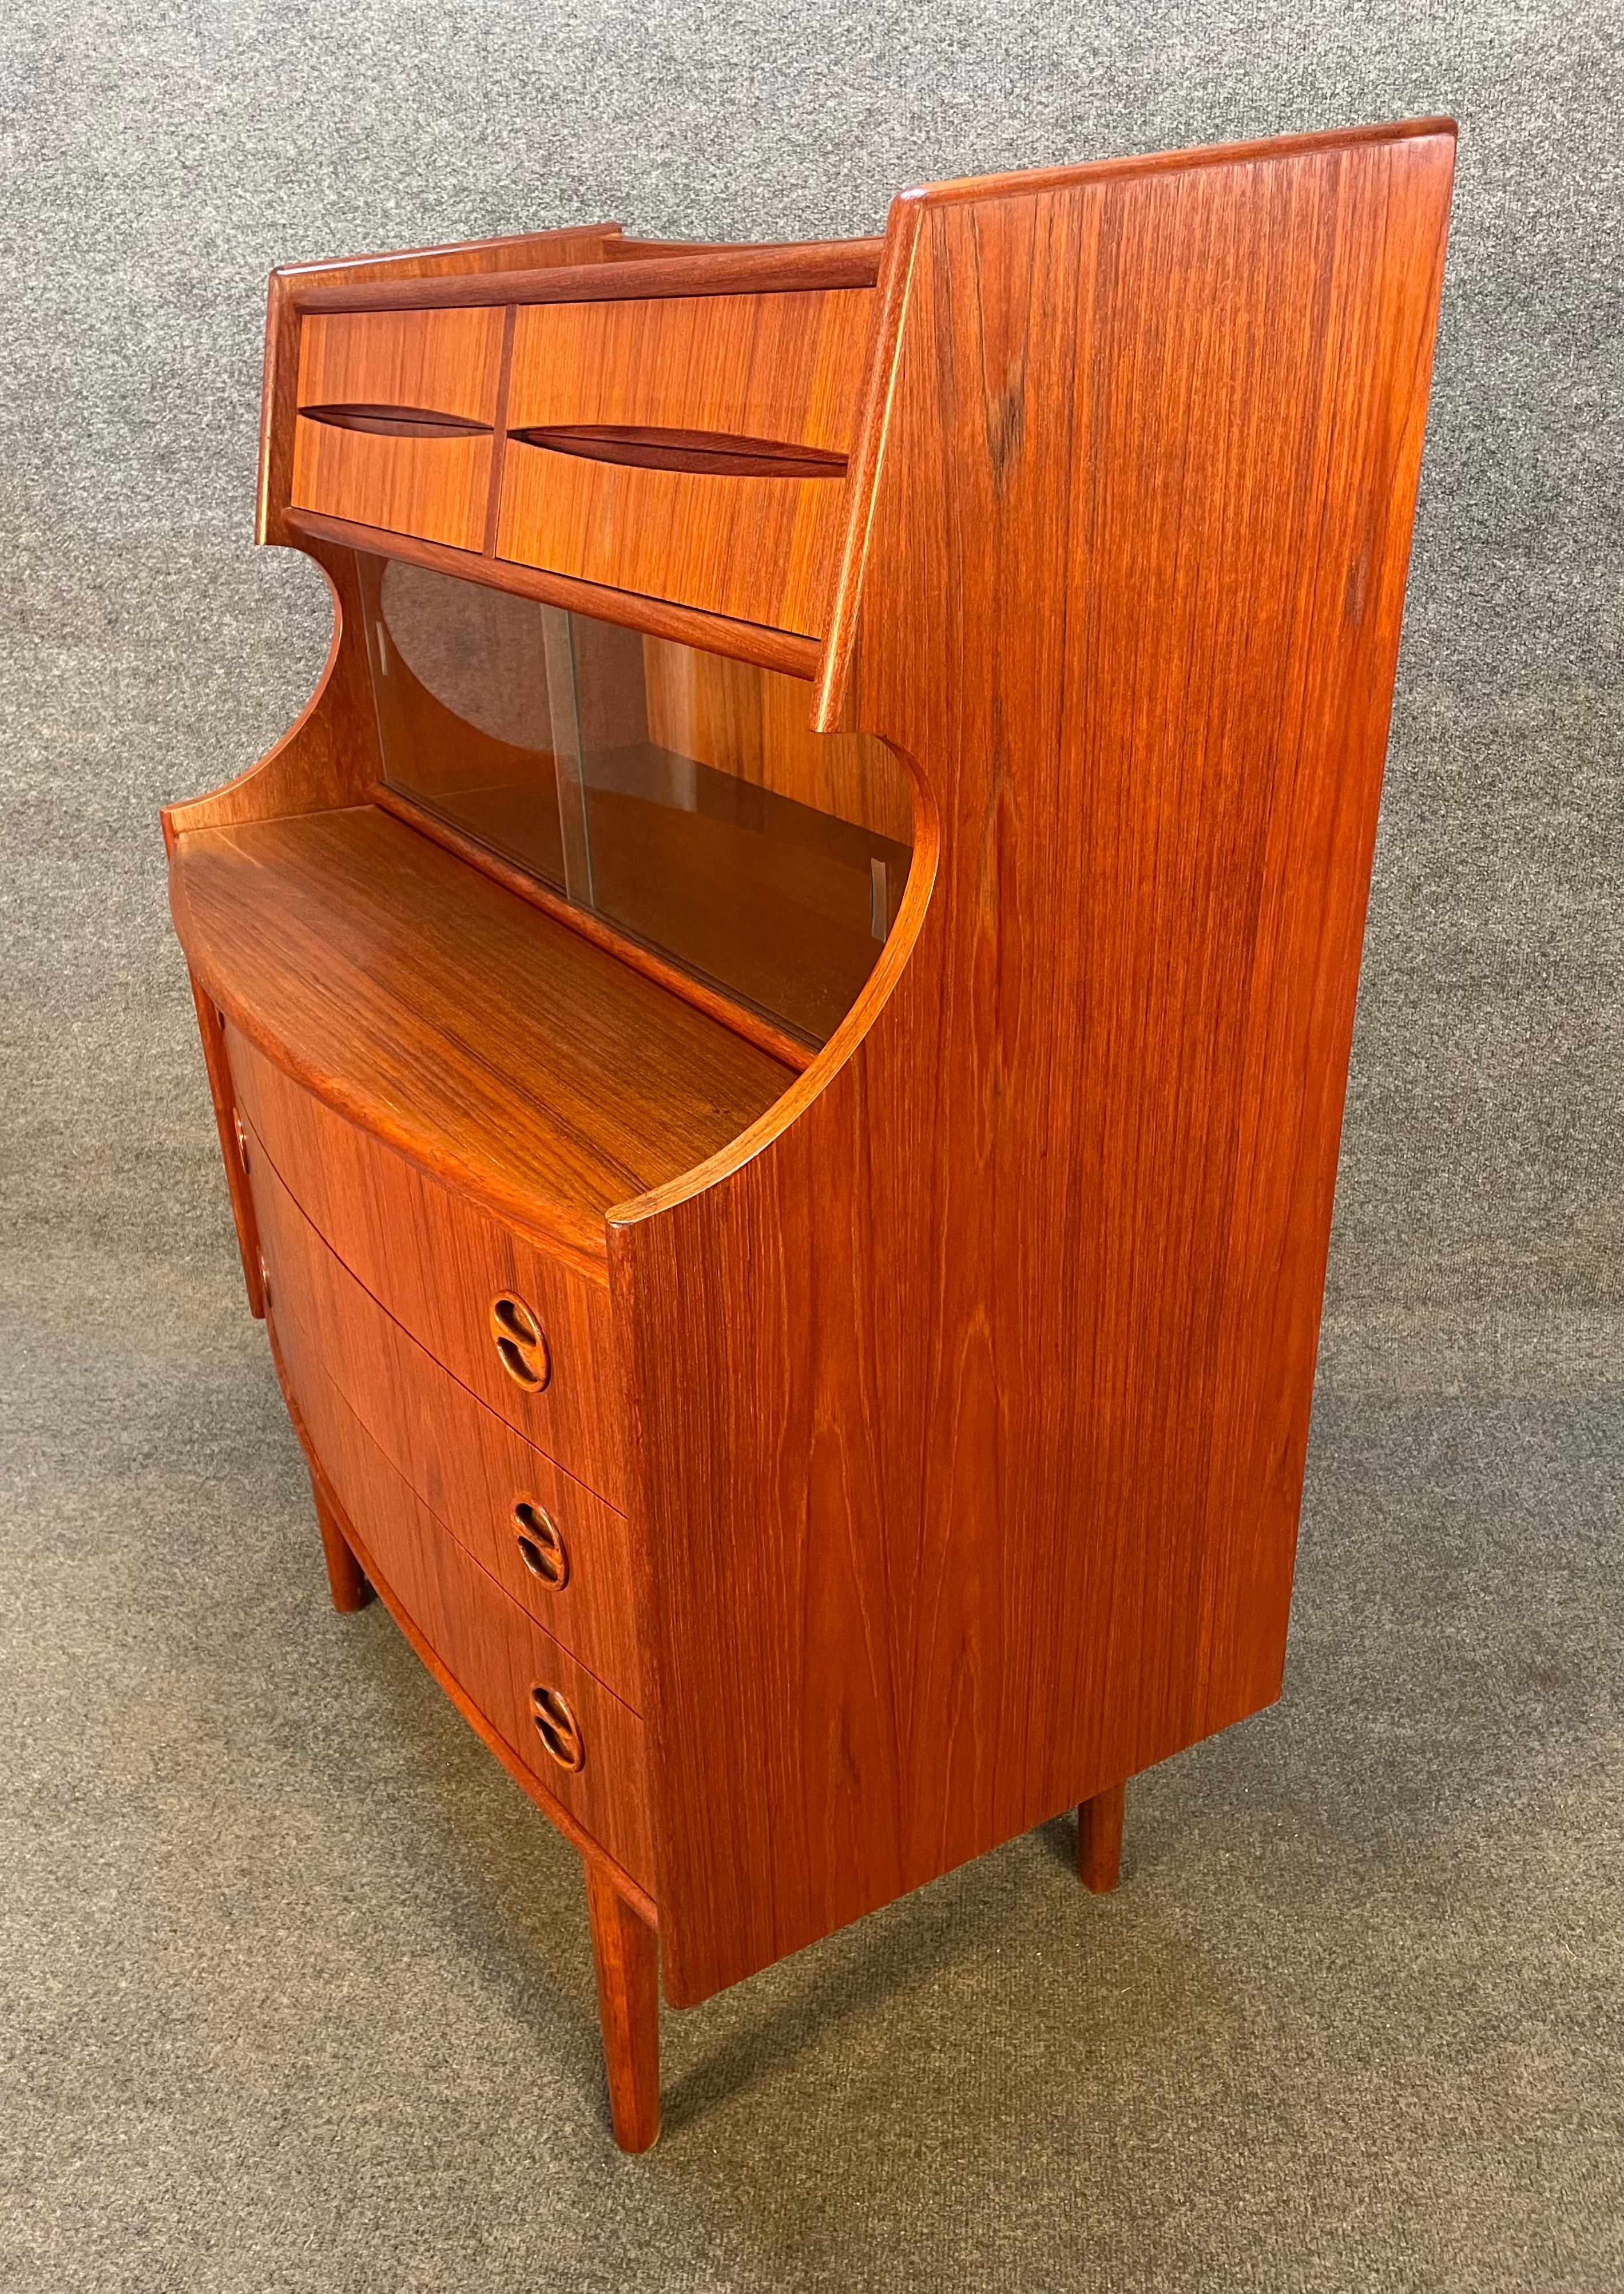 Vintage Danish Mid-Century Modern Teak Secretary Desk by Falsig Mobler For Sale 3